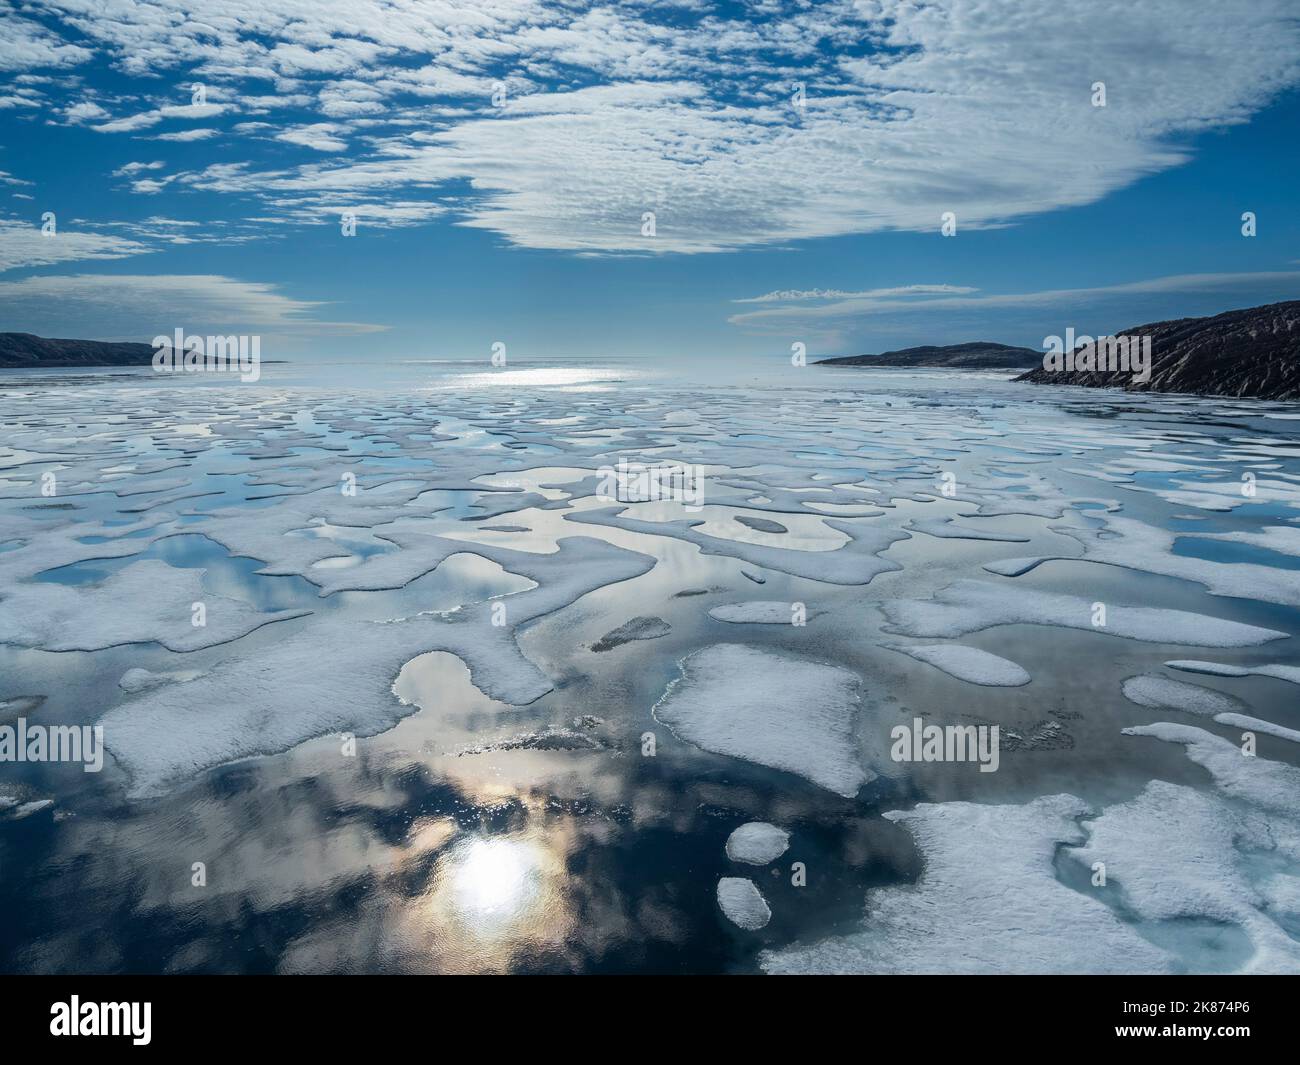 Empaqueter la glace à l'extrémité ouest du détroit de Bellot menant au chenal McClintock, passage du Nord-Ouest, Nunavut, Canada, Amérique du Nord Banque D'Images